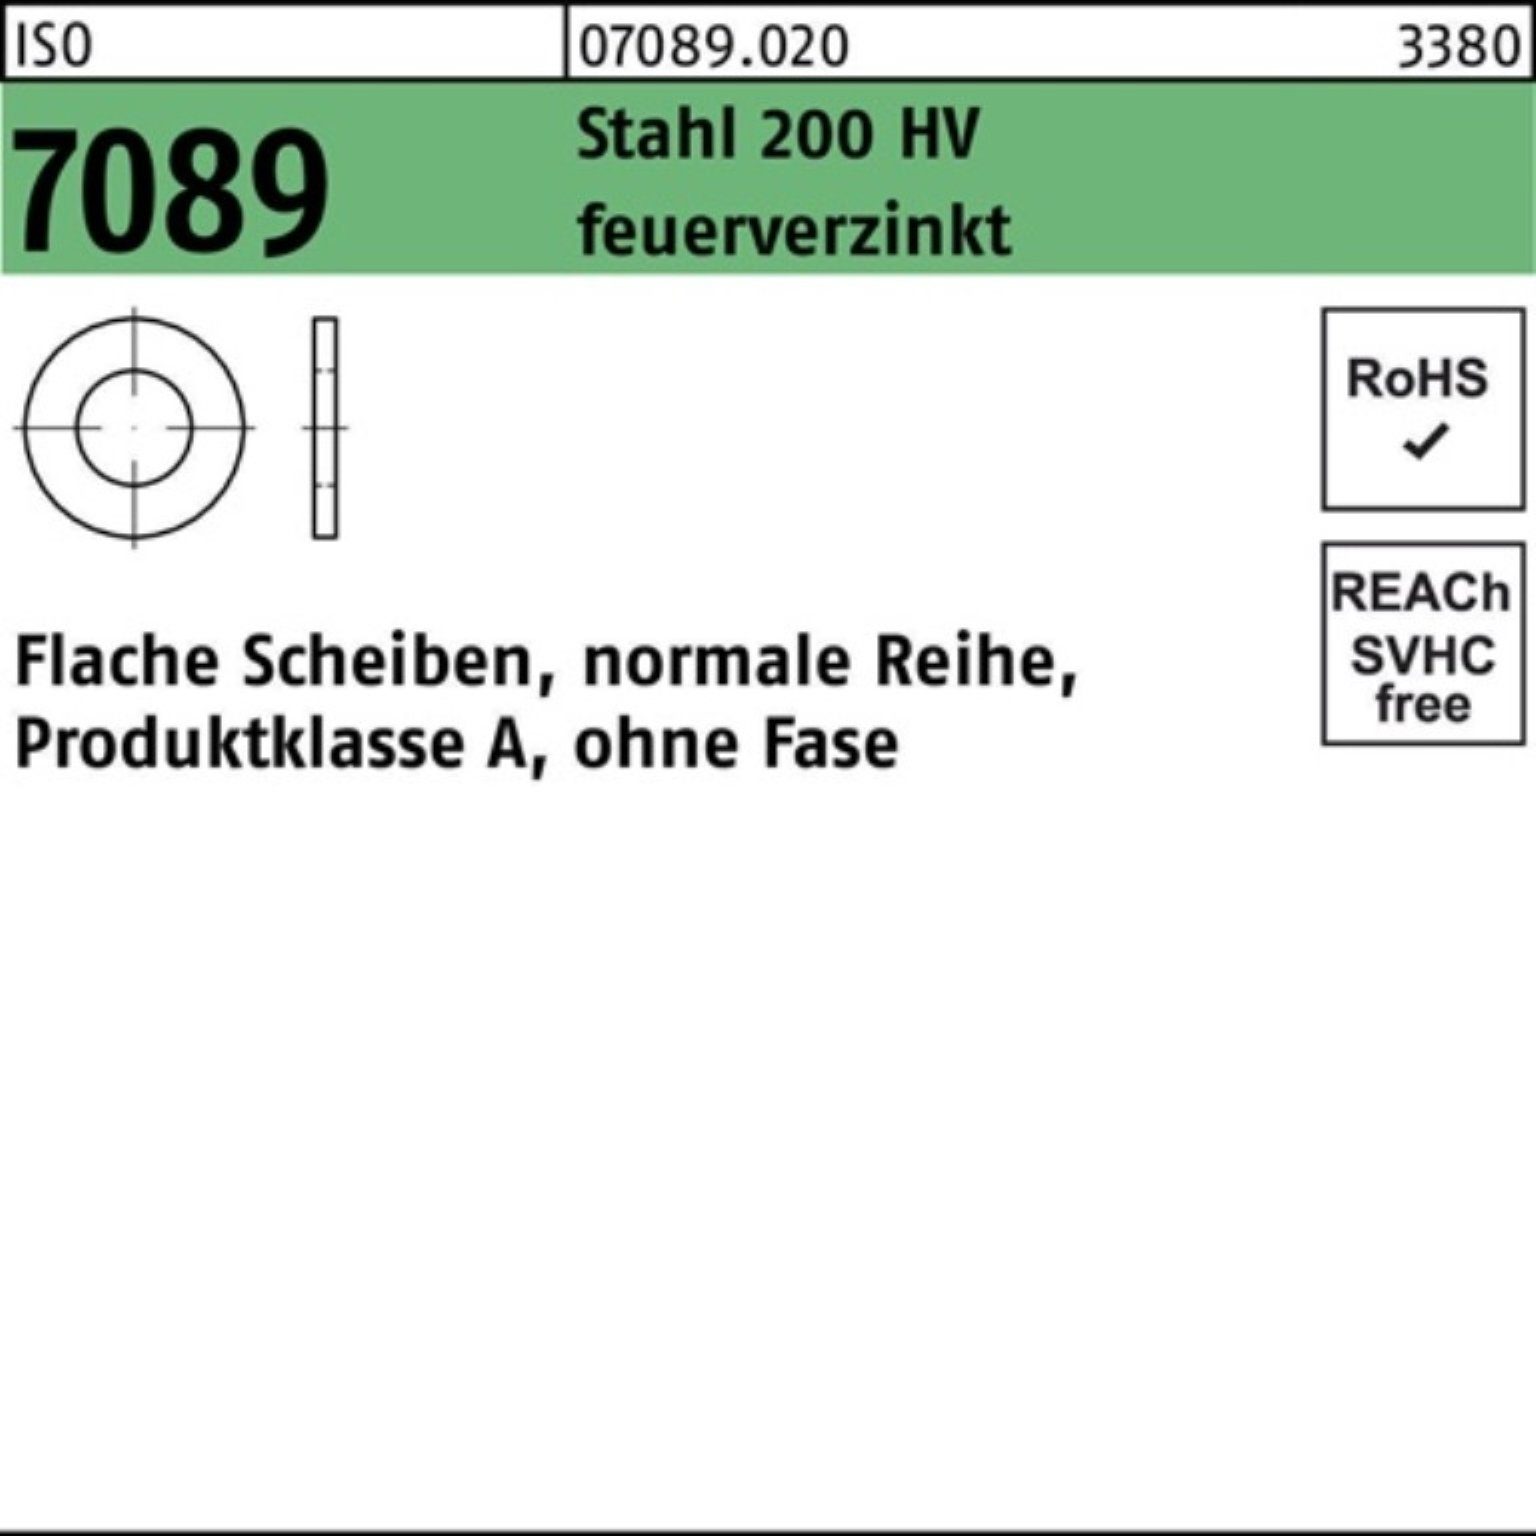 7089 HV Unterlegscheibe Bufab 200 feuerverz. 500er ISO Stahl Pack o.Fase 14 Unterlegscheibe